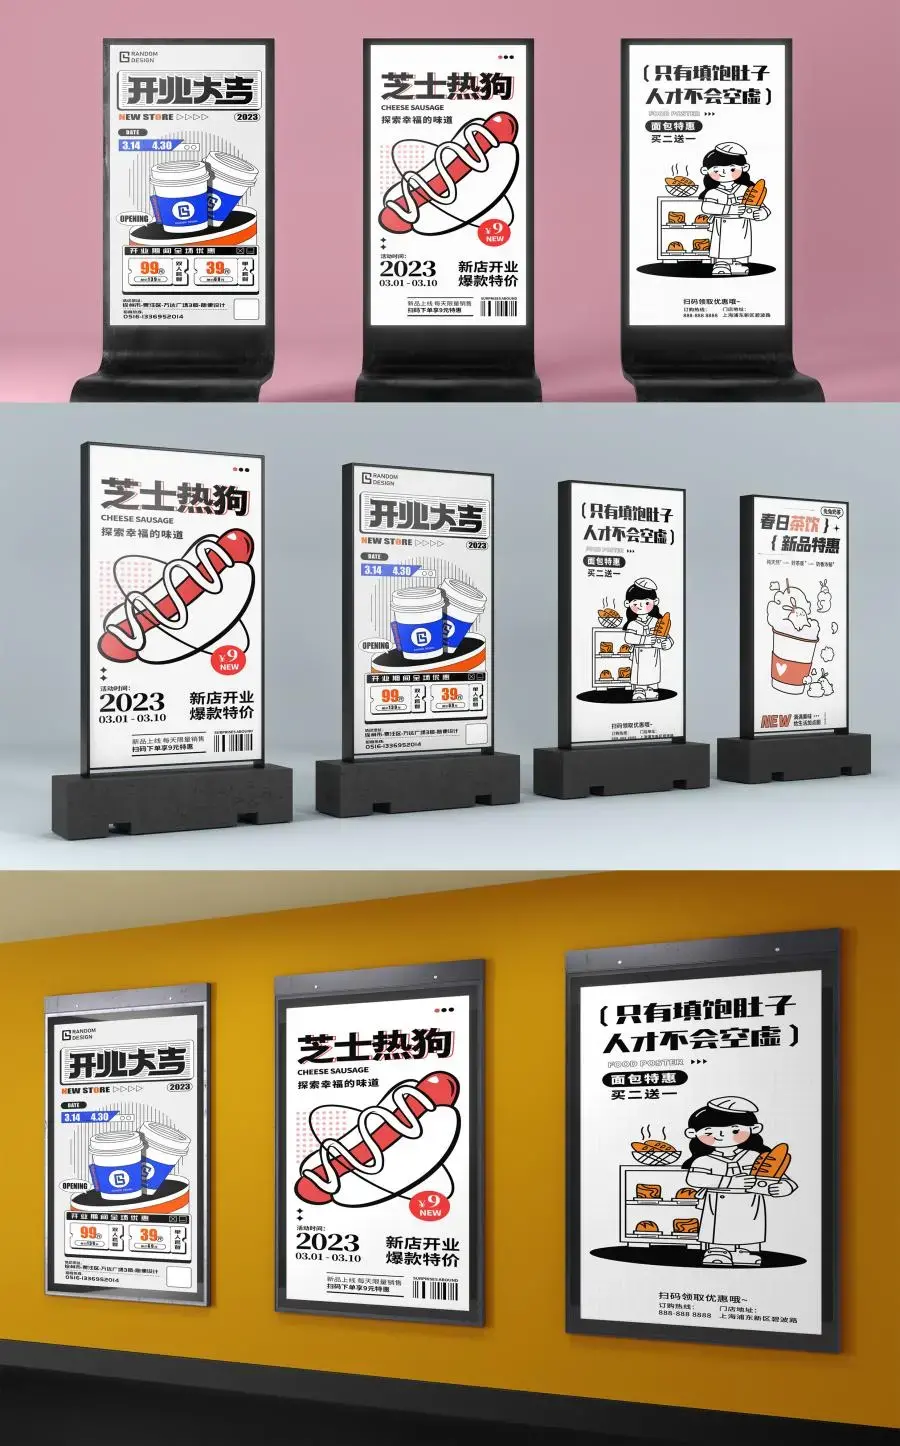 新媒体灯箱展架招牌广告海报效果图展示PSD贴图样机设计素材模板-爱设计爱分享c